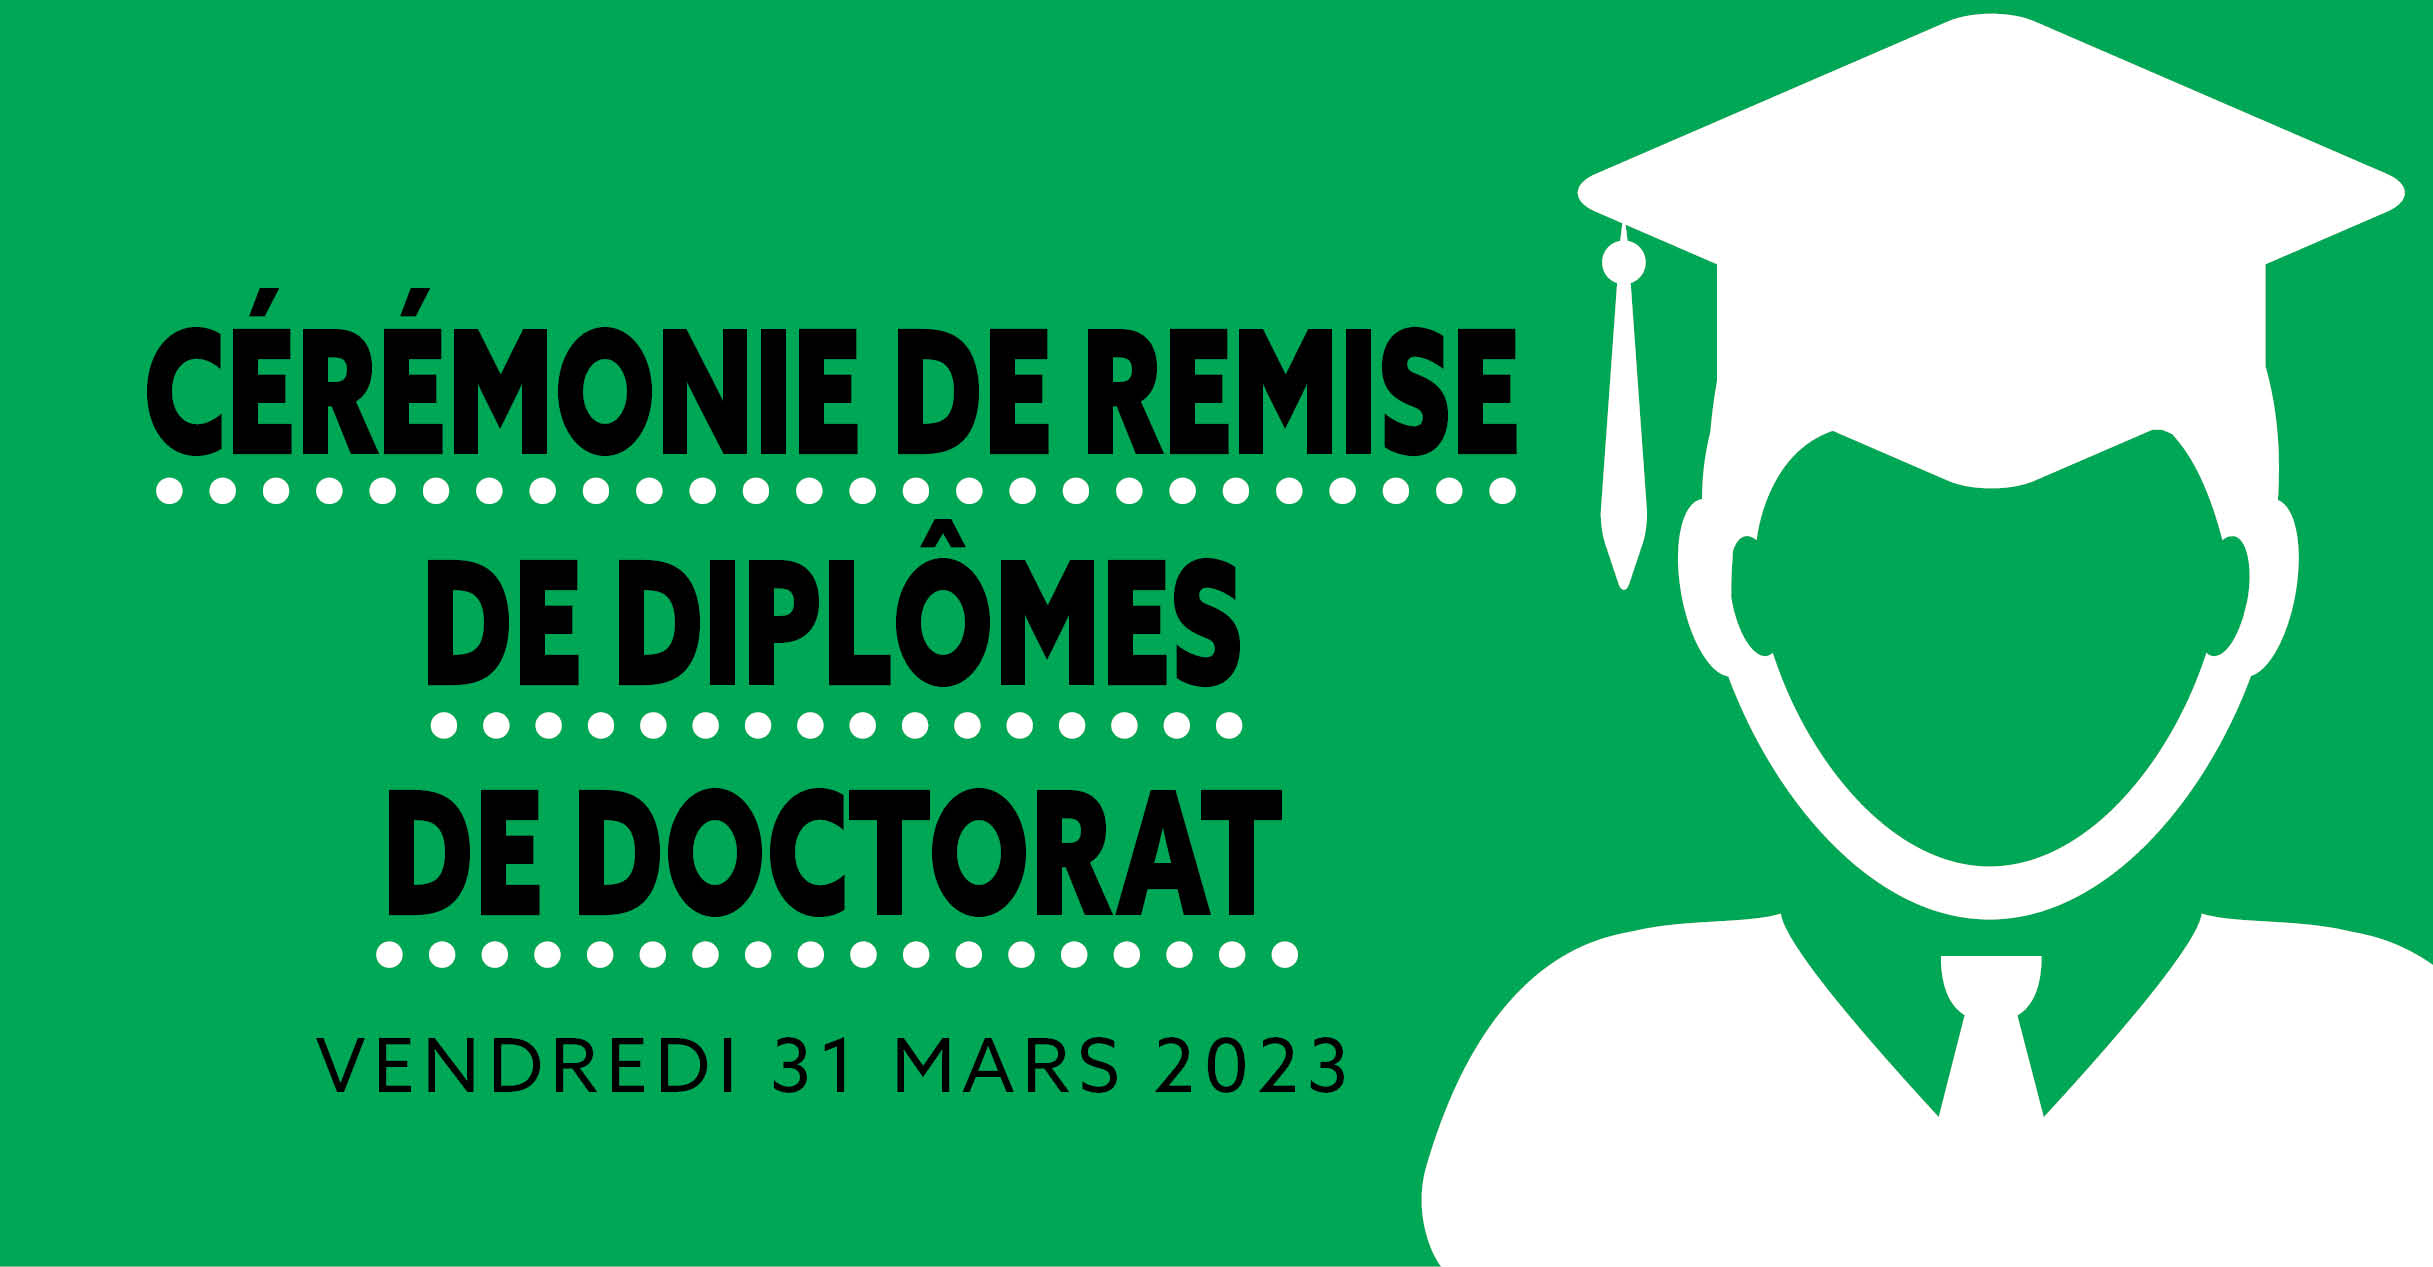 Cérémonie de remise de diplômes de Doctorat - vendredi 31 mars 2023